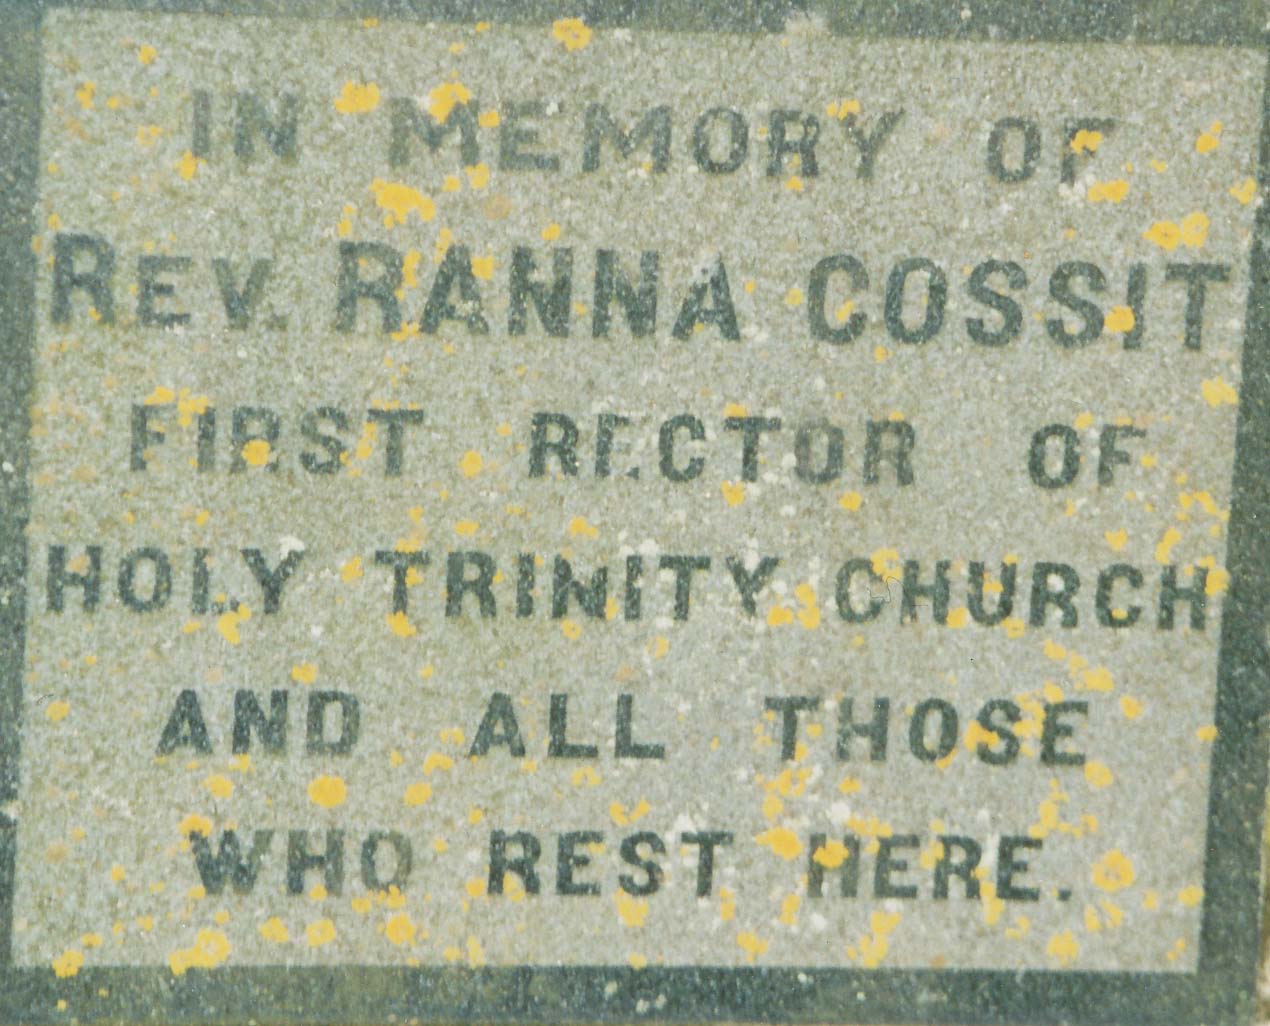 Ranna Cossitt Cemetery